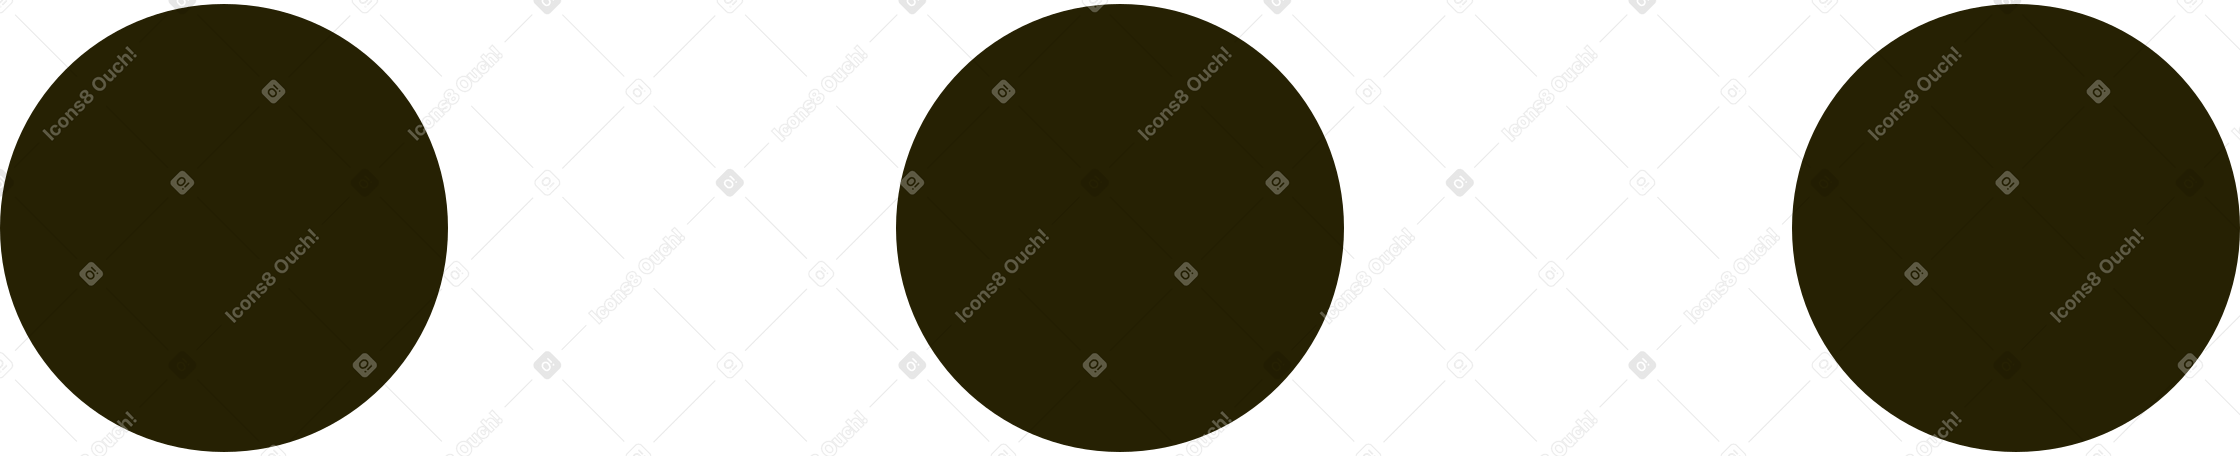 ellipsis Illustration in PNG, SVG